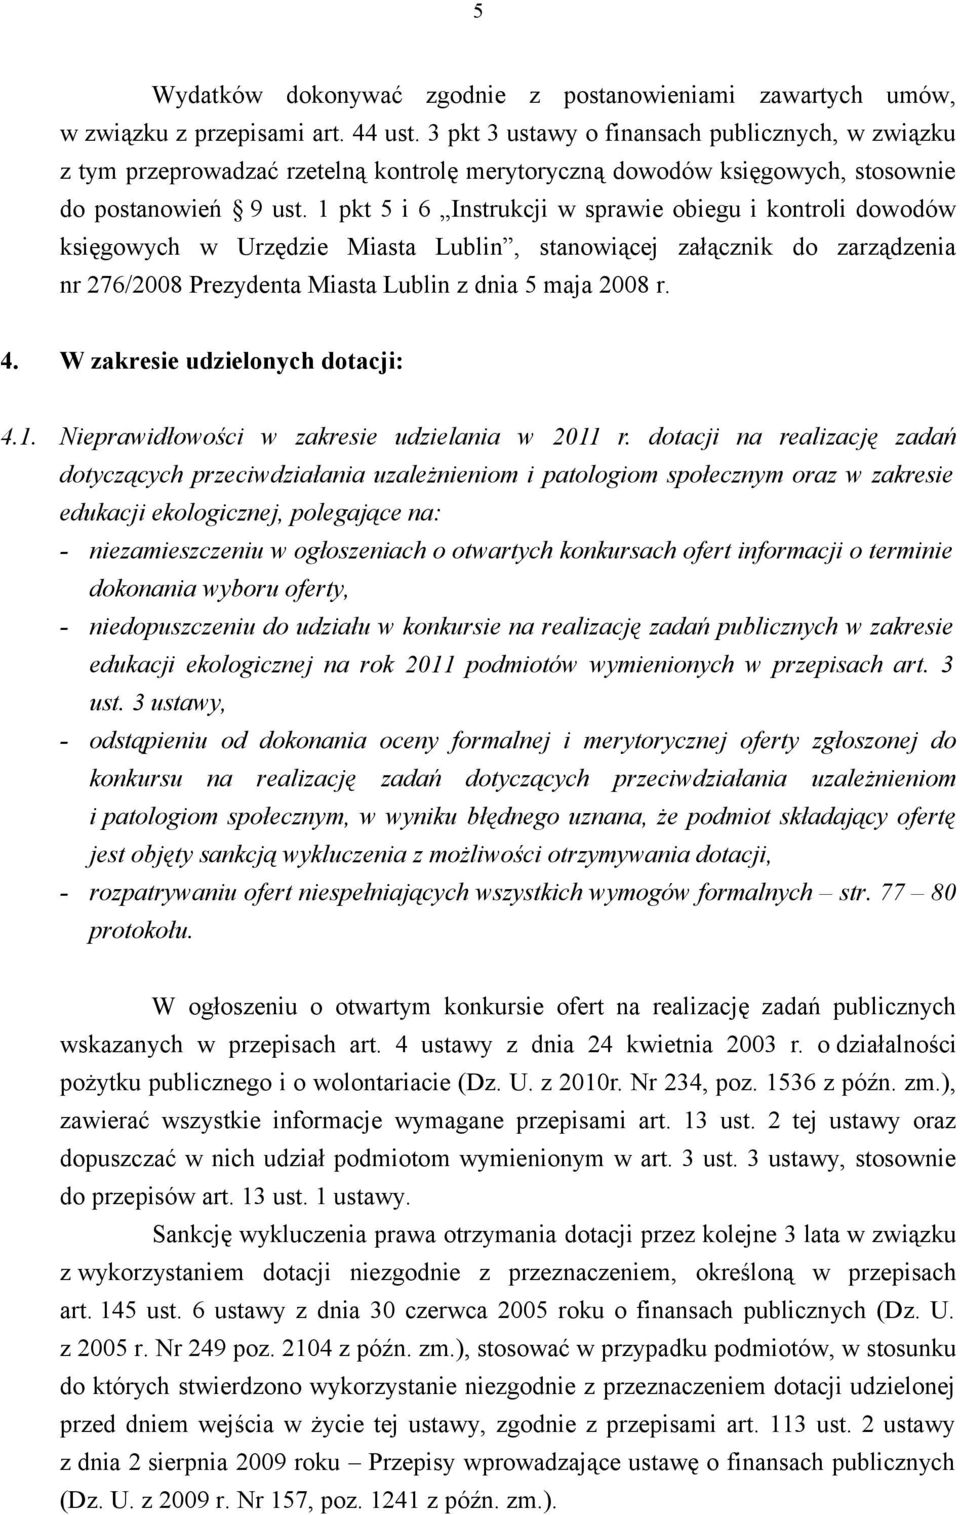 1 pkt 5 i 6 Instrukcji w sprawie obiegu i kontroli dowodów księgowych w Urzędzie Miasta Lublin, stanowiącej załącznik do zarządzenia nr 276/2008 Prezydenta Miasta Lublin z dnia 5 maja 2008 r. 4.